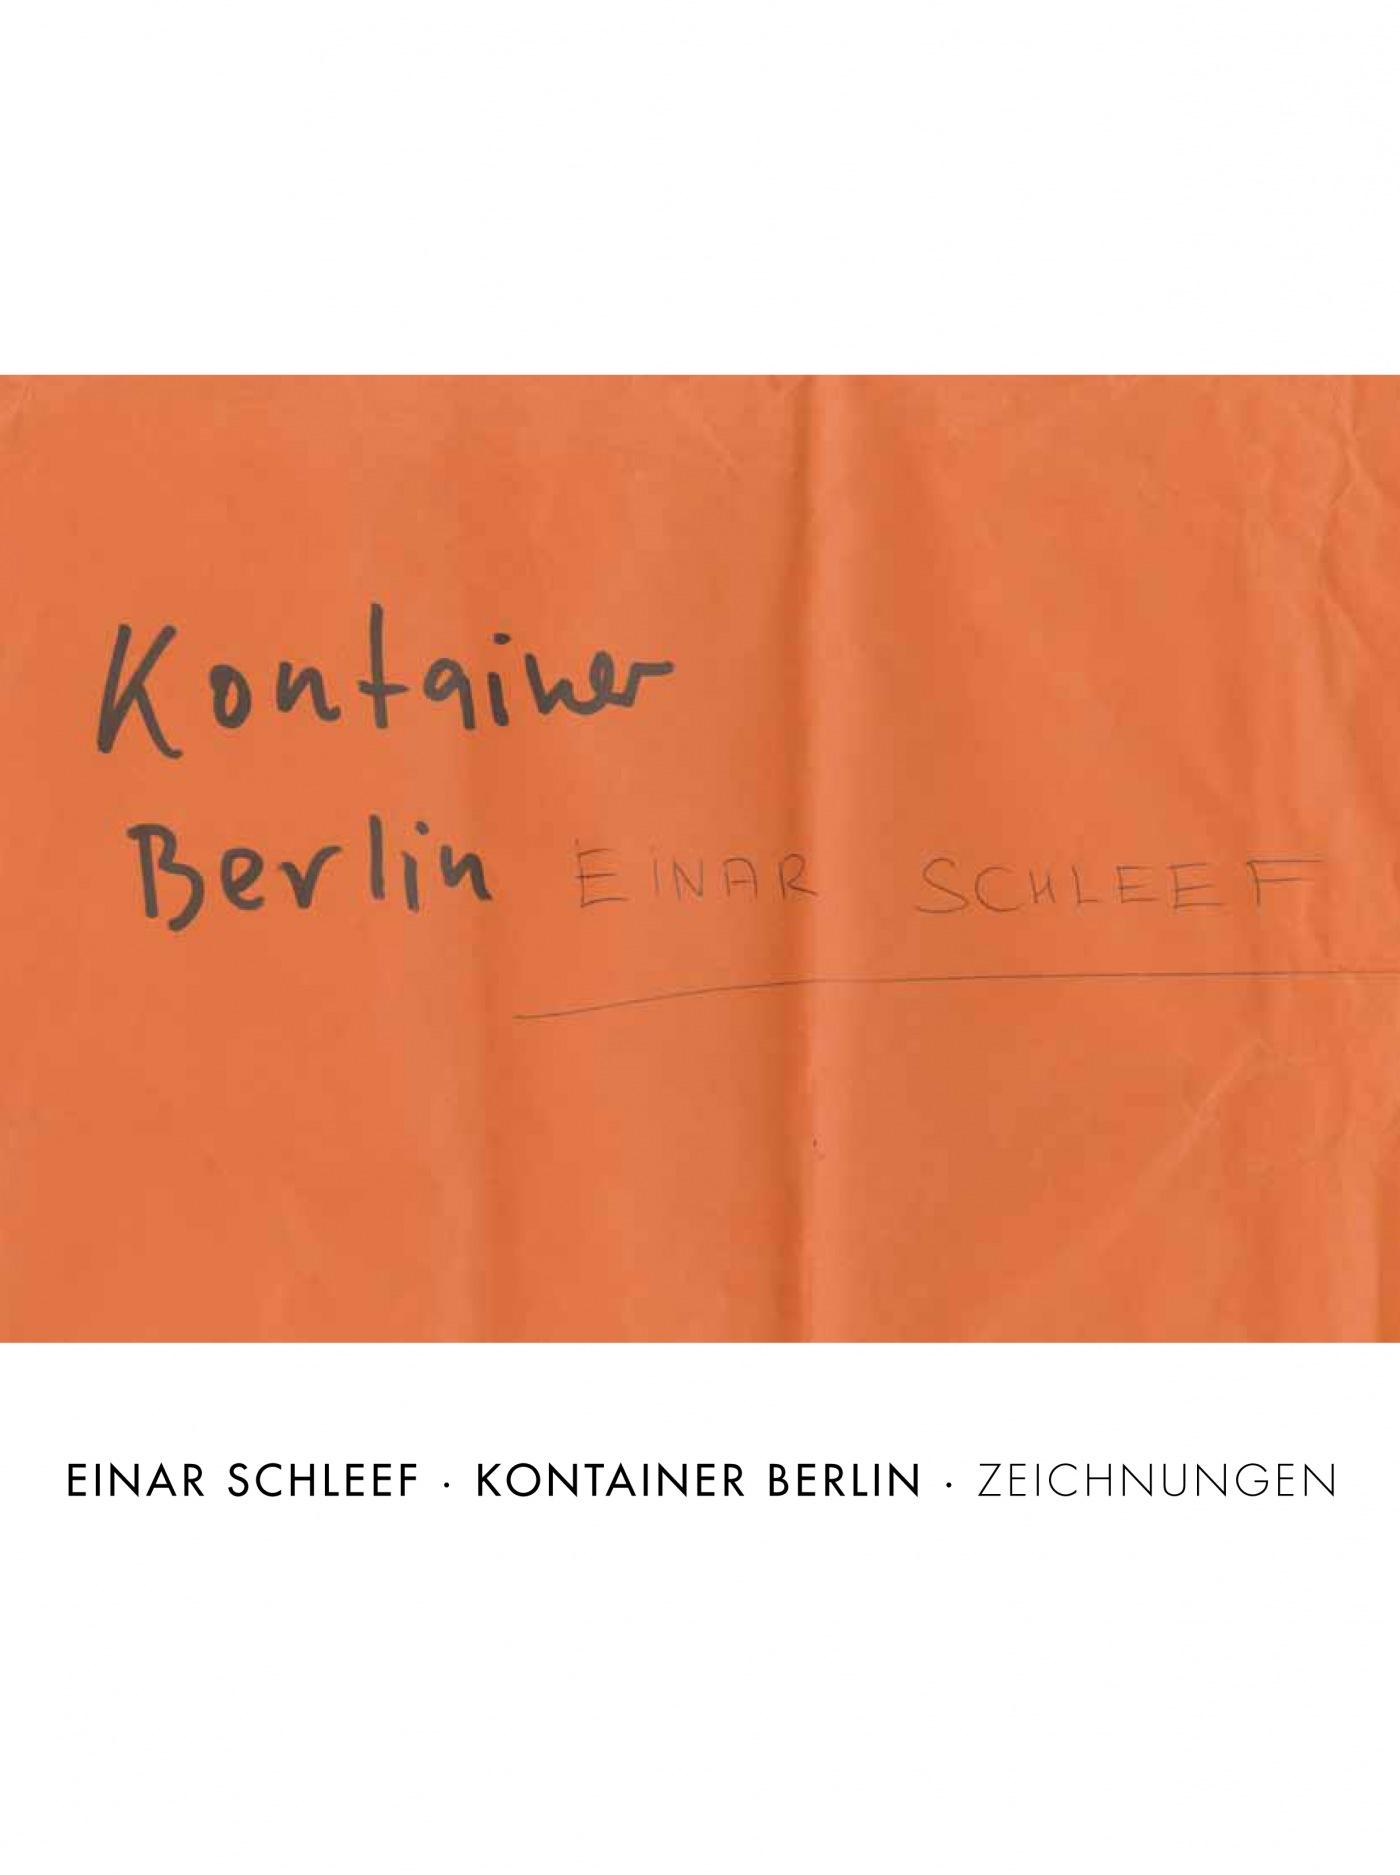 "Einar Schleef. Kontainer Berlin"